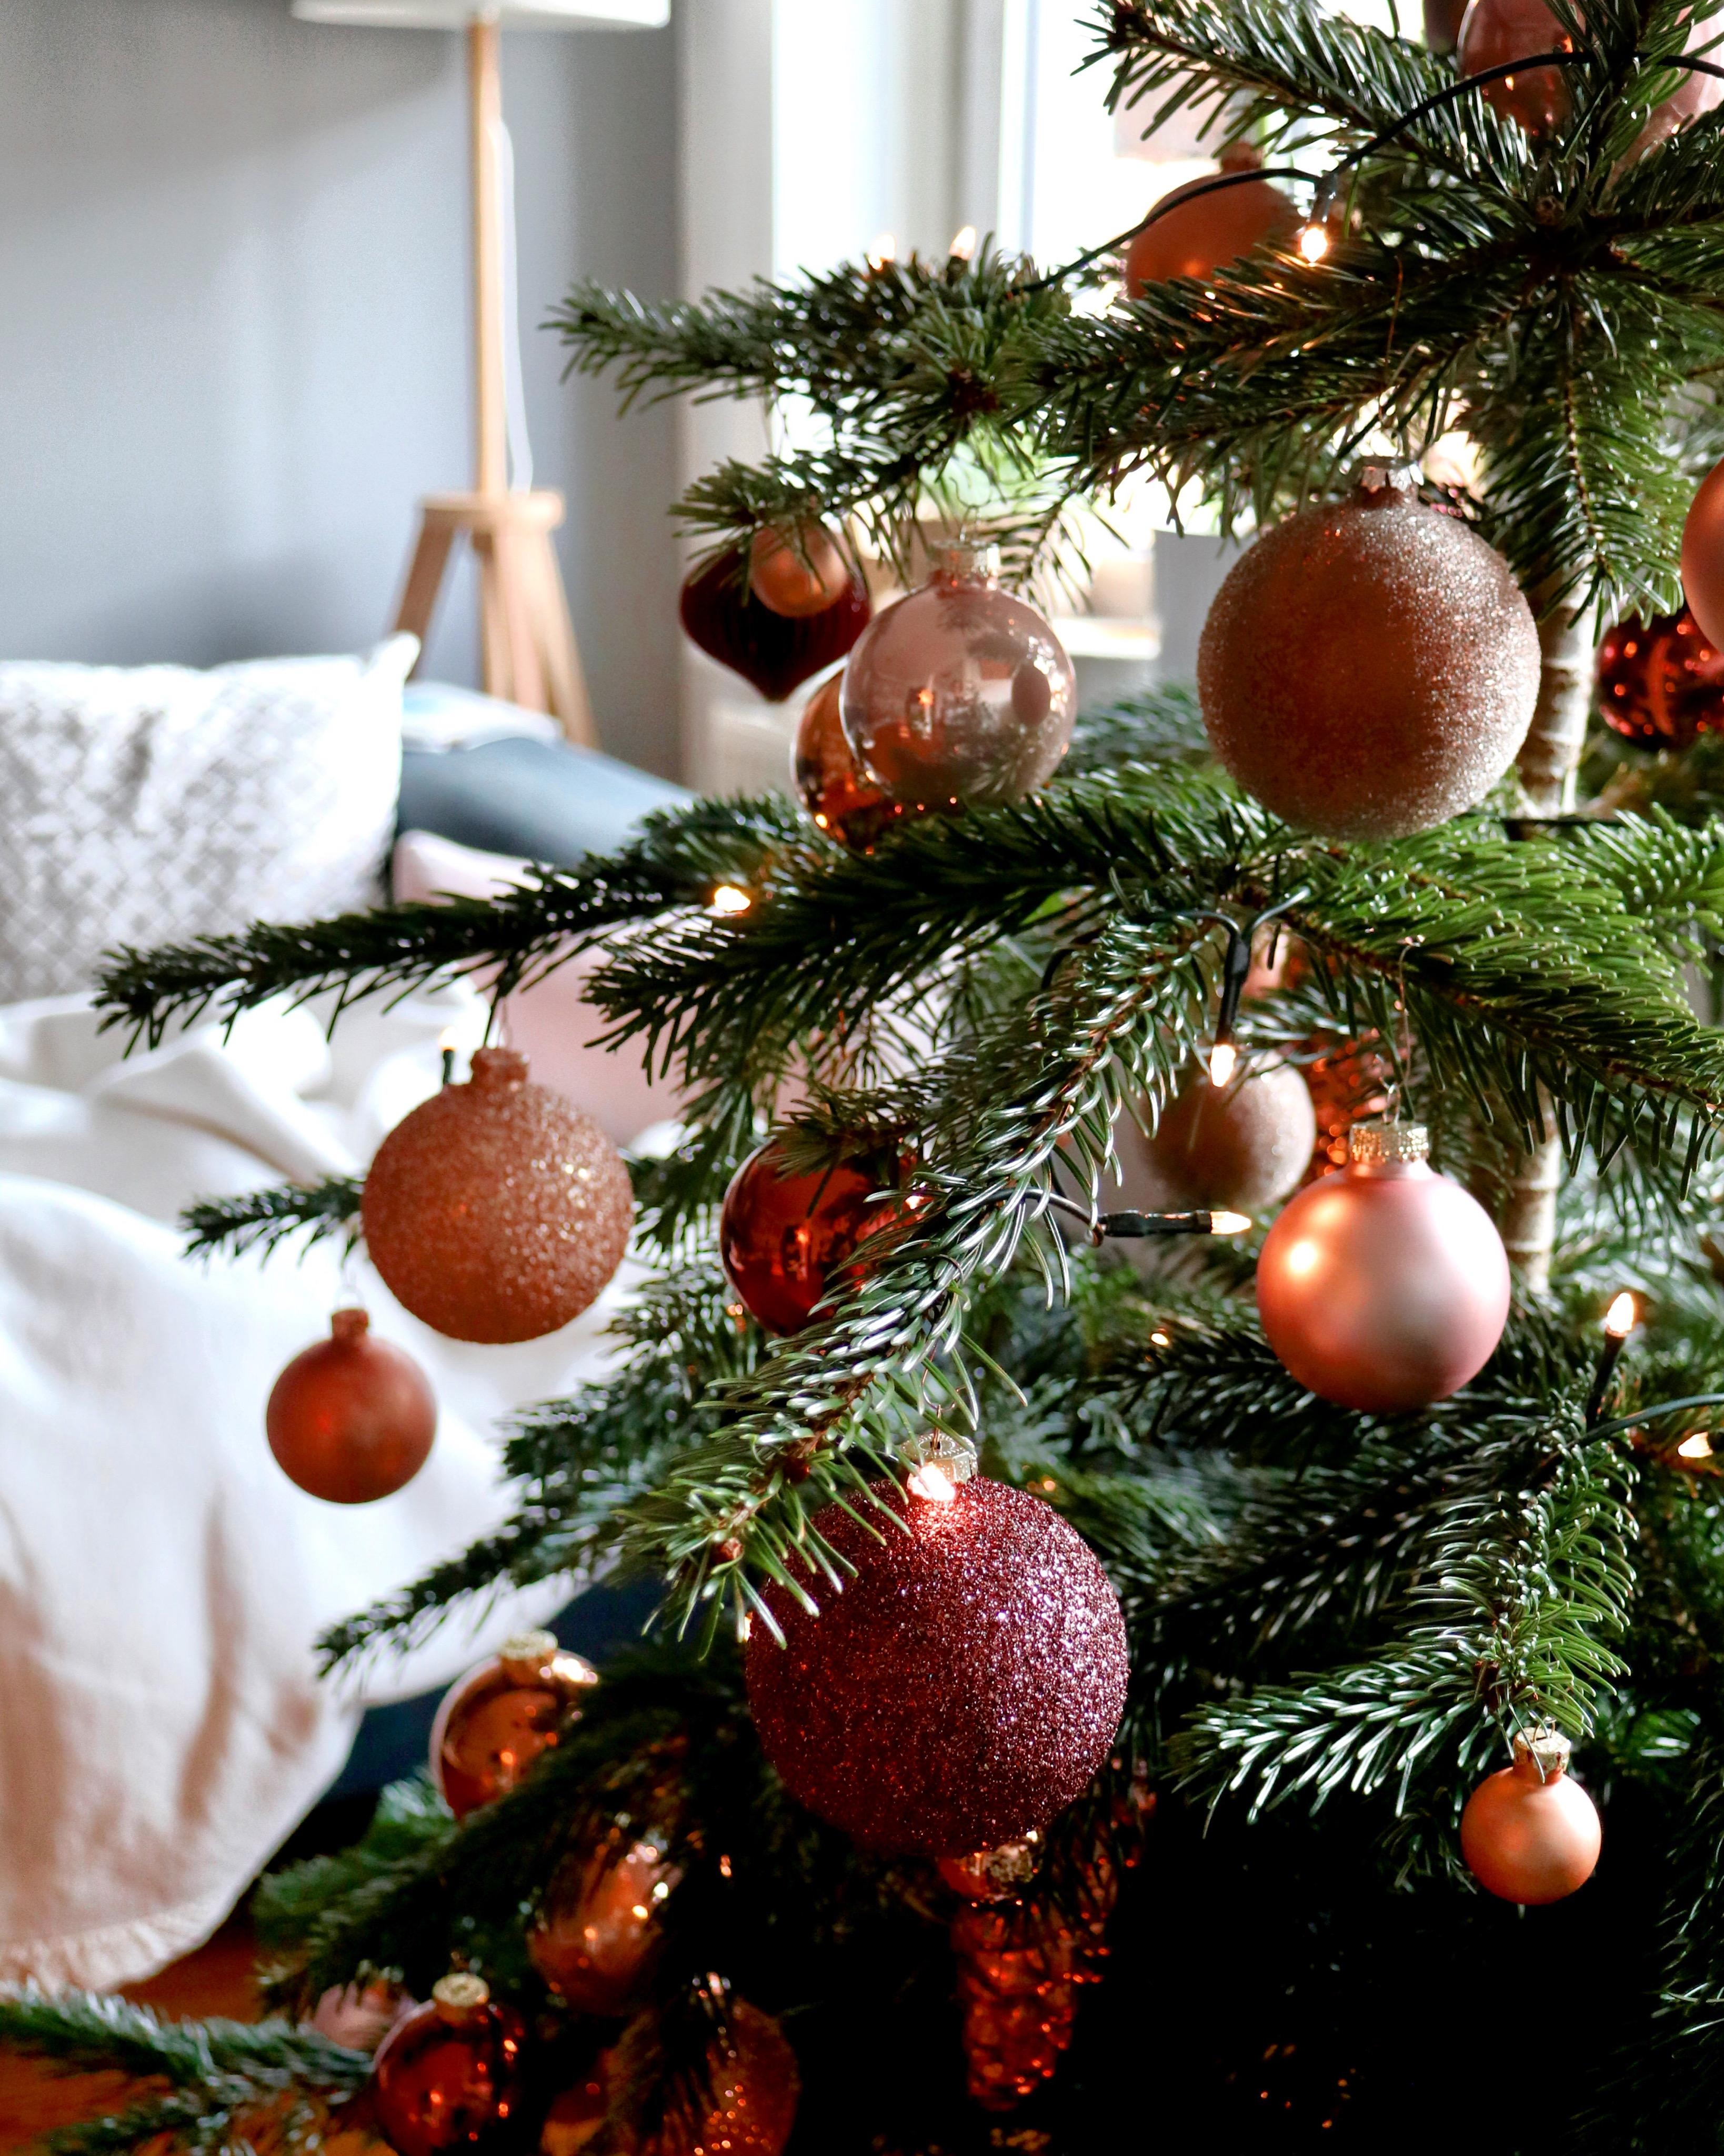 Unser #weihnachtsbaum in #kupfer #rosé und #bordeaux
#weihnachtsdeko #baumschmuck